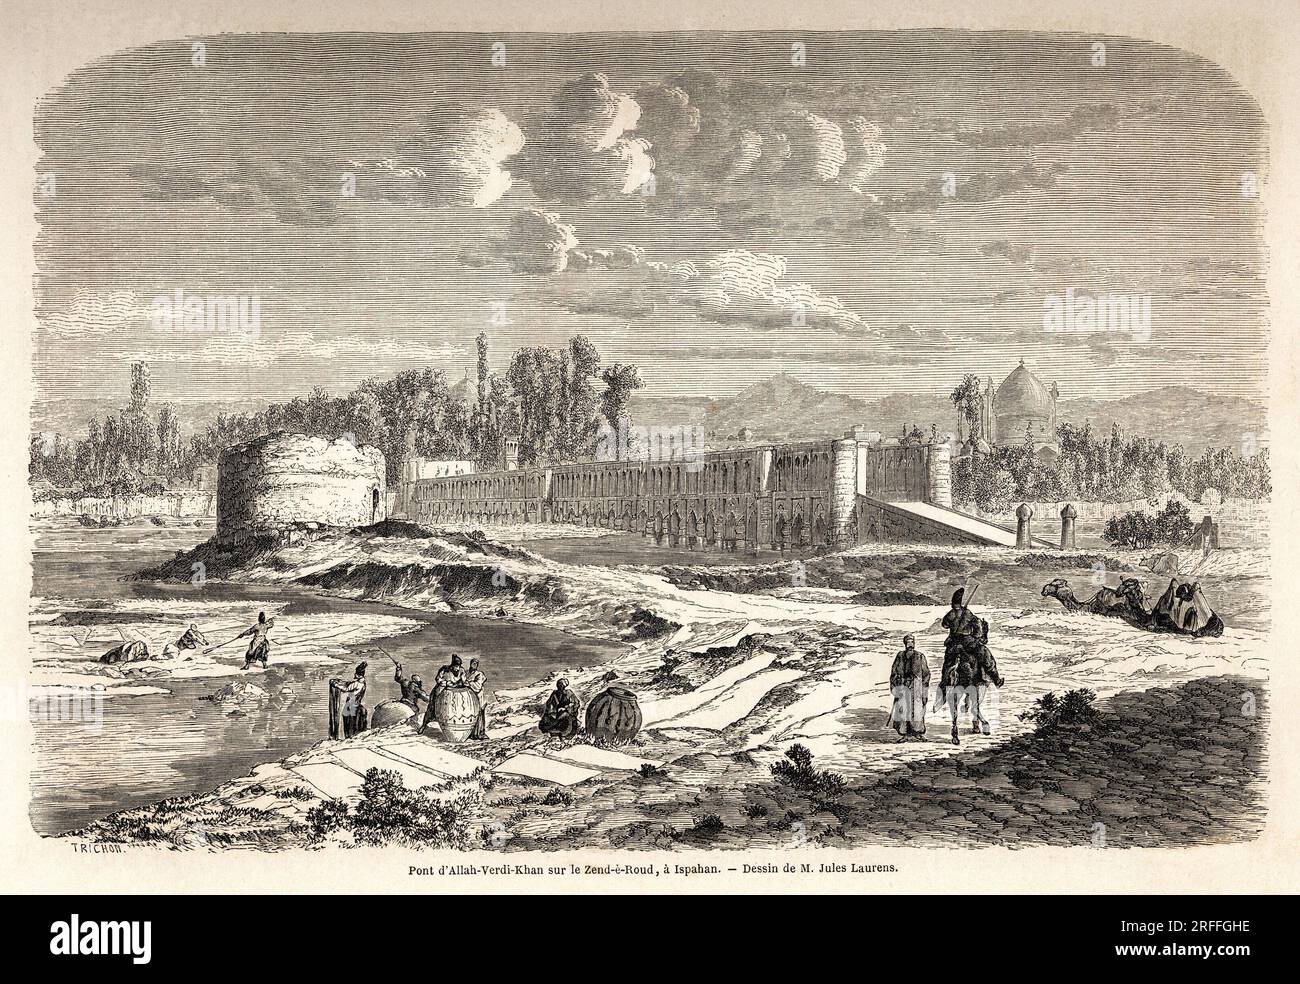 Le pont Allah Verdi Kahn, erige vers 1608, a Ispahan (ou Isfahan) (Iran), a la fois lieu de passage pour traverser la riviere Zend e Roud, mais aussi barrage pour reguler le cours de la riviere, avec un Talar, ou kiosque des miroirs, ou le souverain perse pouvait observer la riviere. Dessin de Jules Laurens (1825-1901), pour illustrer le voyage en Perse, de 1855 a 1858, d'Arthur Gobineau (1816-1882). Gravure in 'Le tour du monde, nouveau journal des voyages' Paris, 1860. Stock Photo